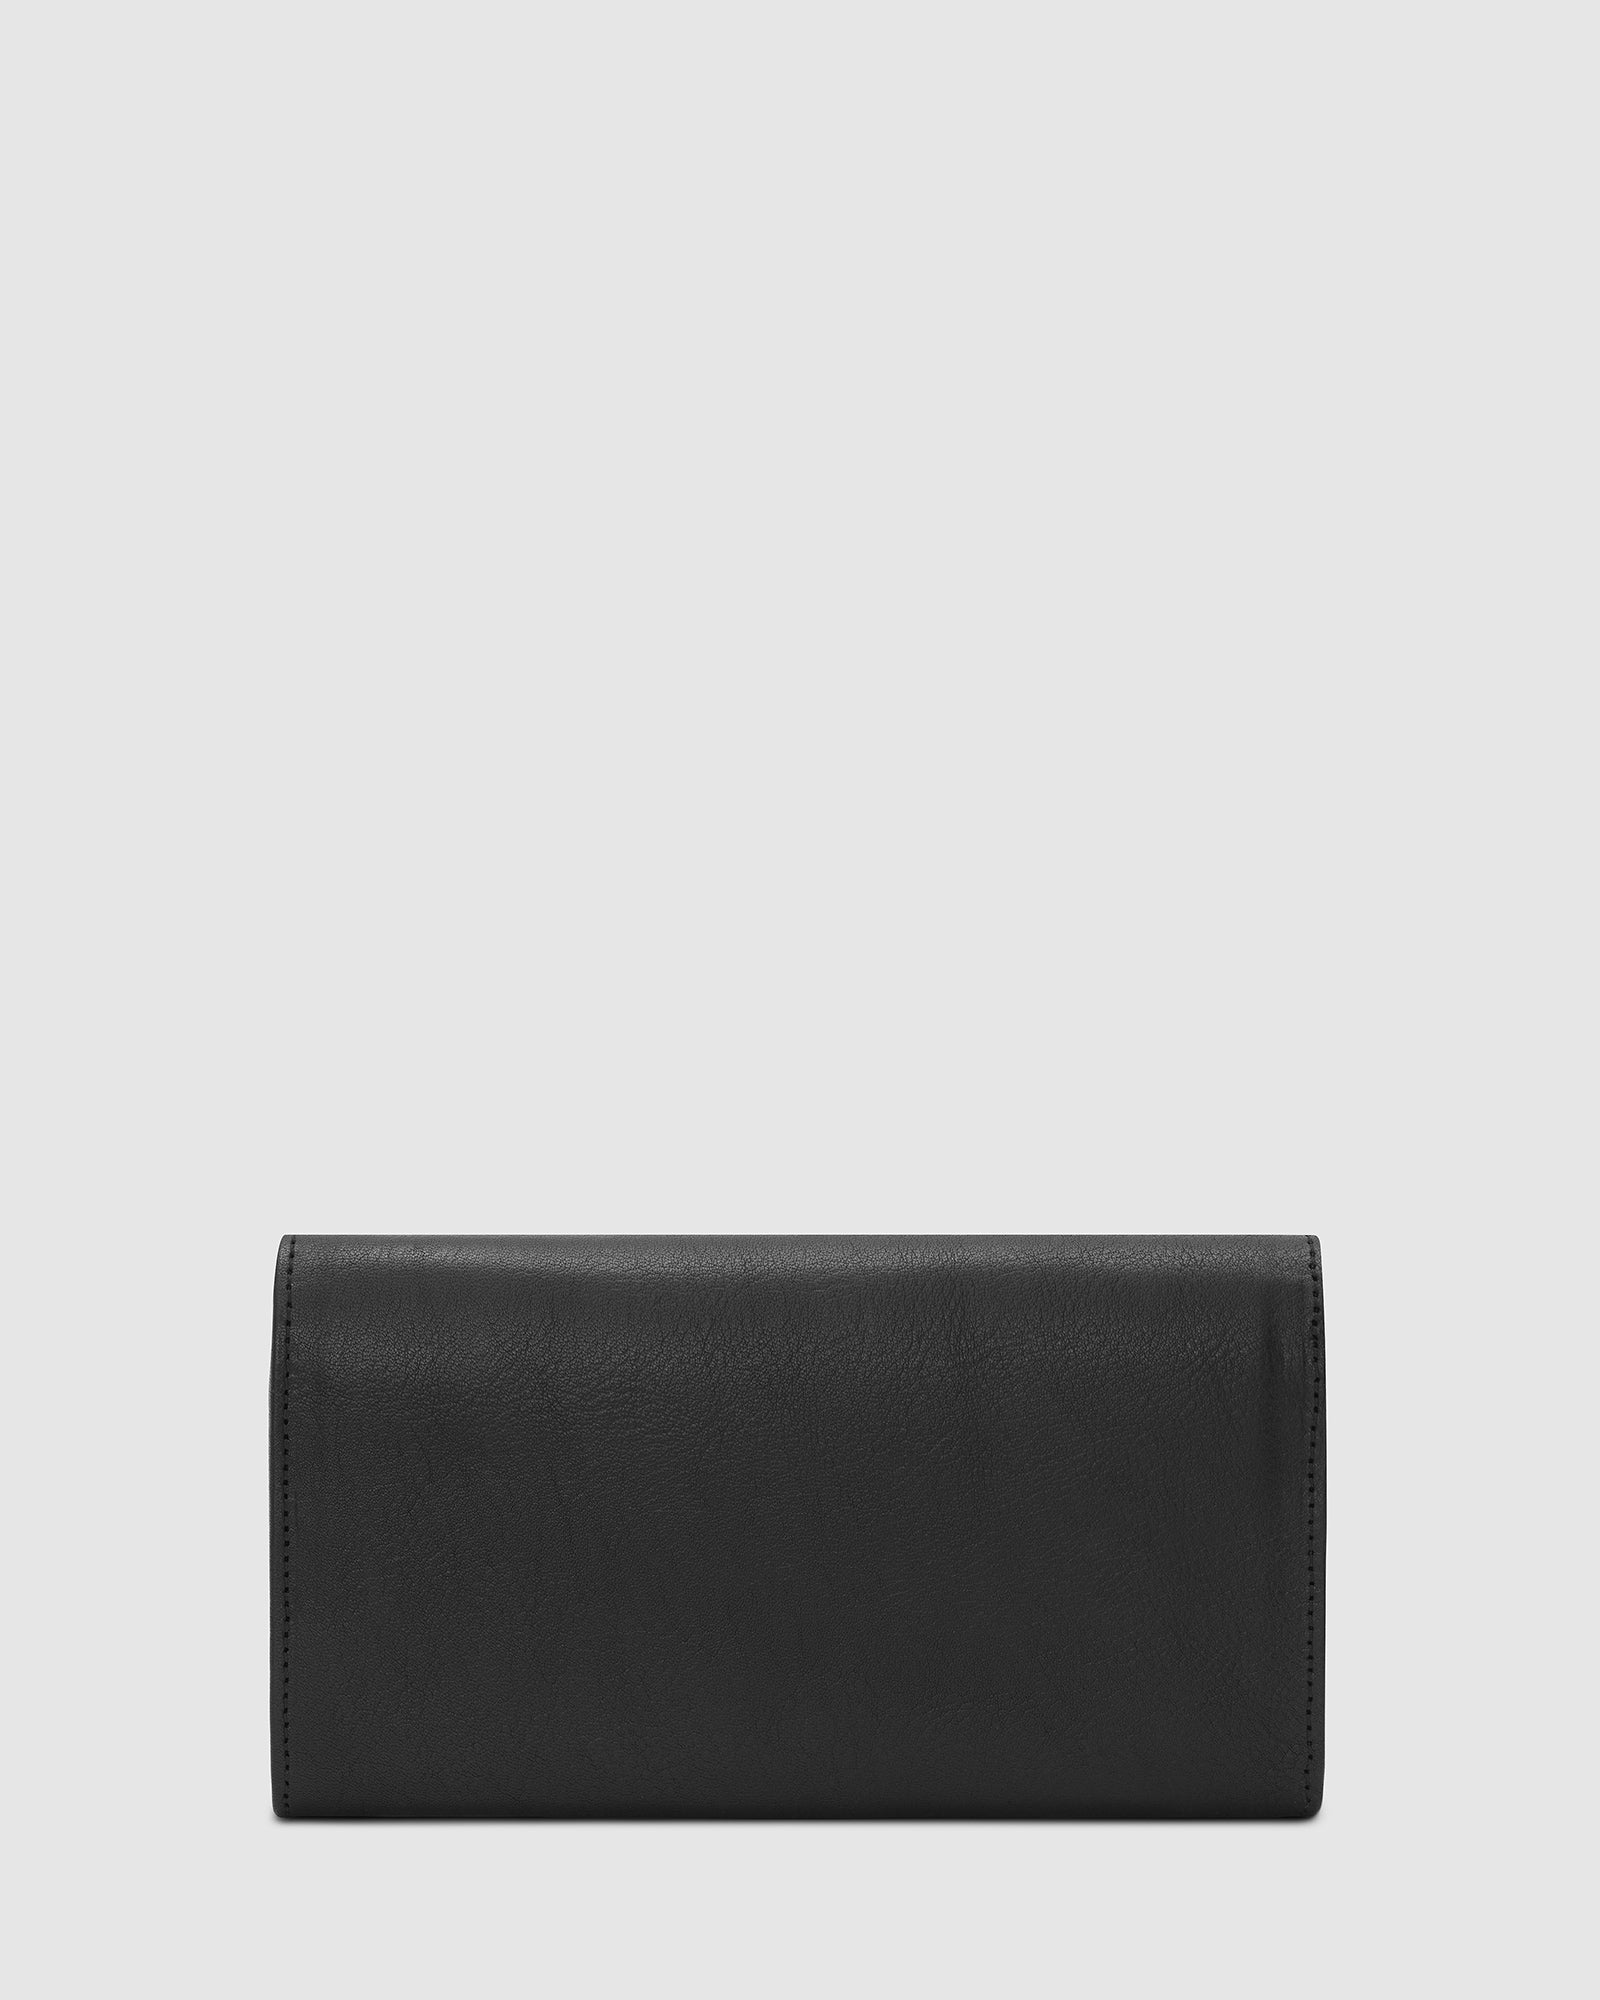 Carmen Black - Women Leather Wallet